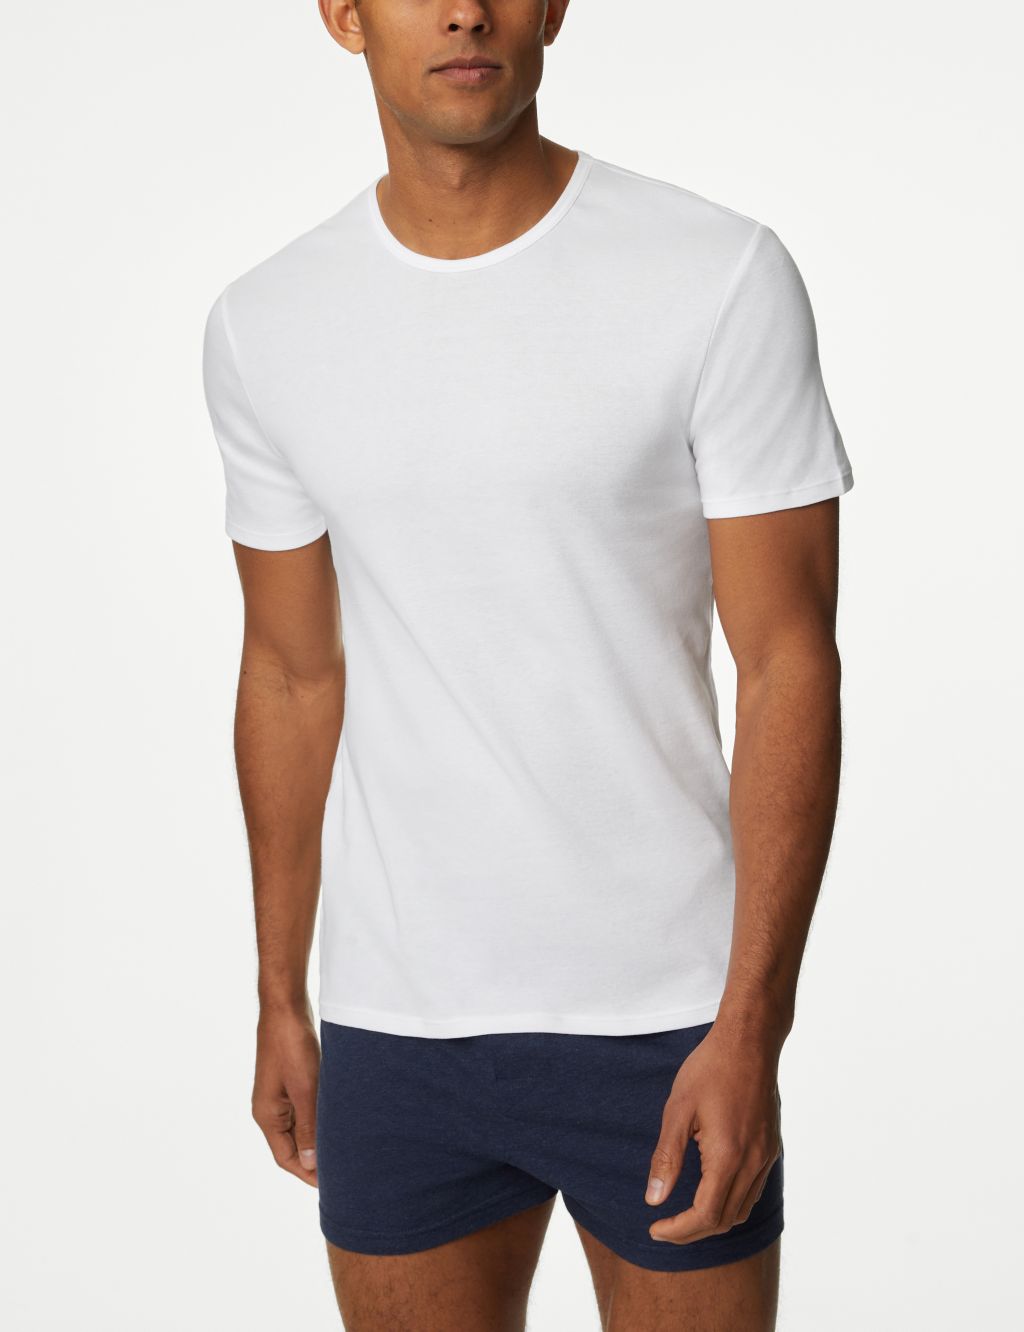 5pk Pure Cotton T-Shirt Vests image 2